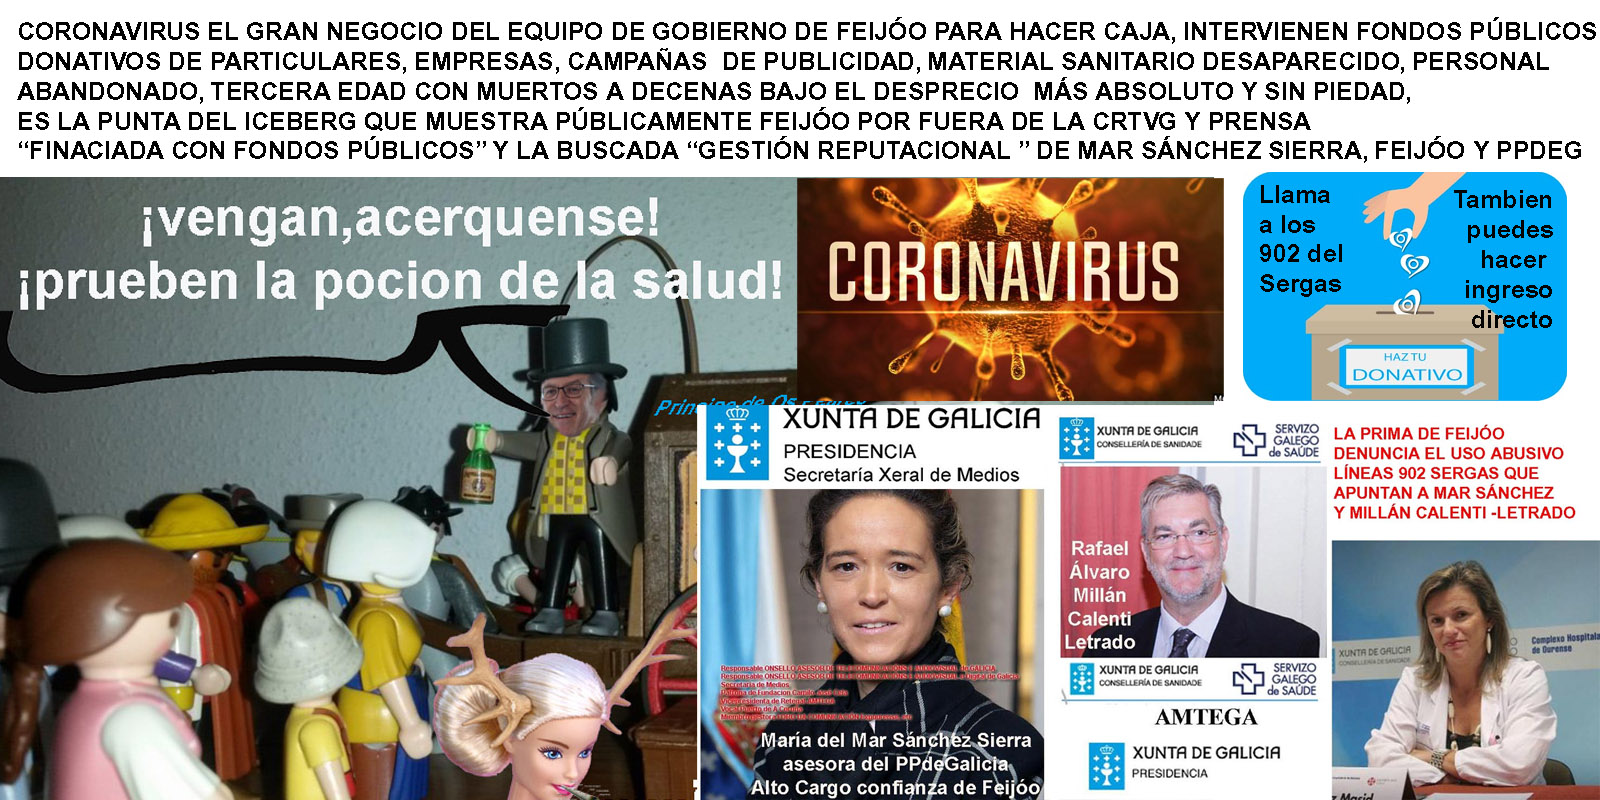 Feijoo en la gestión del coronavirus representa la inmoralidad, deslealtad  y desprecio más absoluto por sus semejantes, a los que pretende saquear  pidiendoles dinero a costa de la pandemia - Xornal Galicia